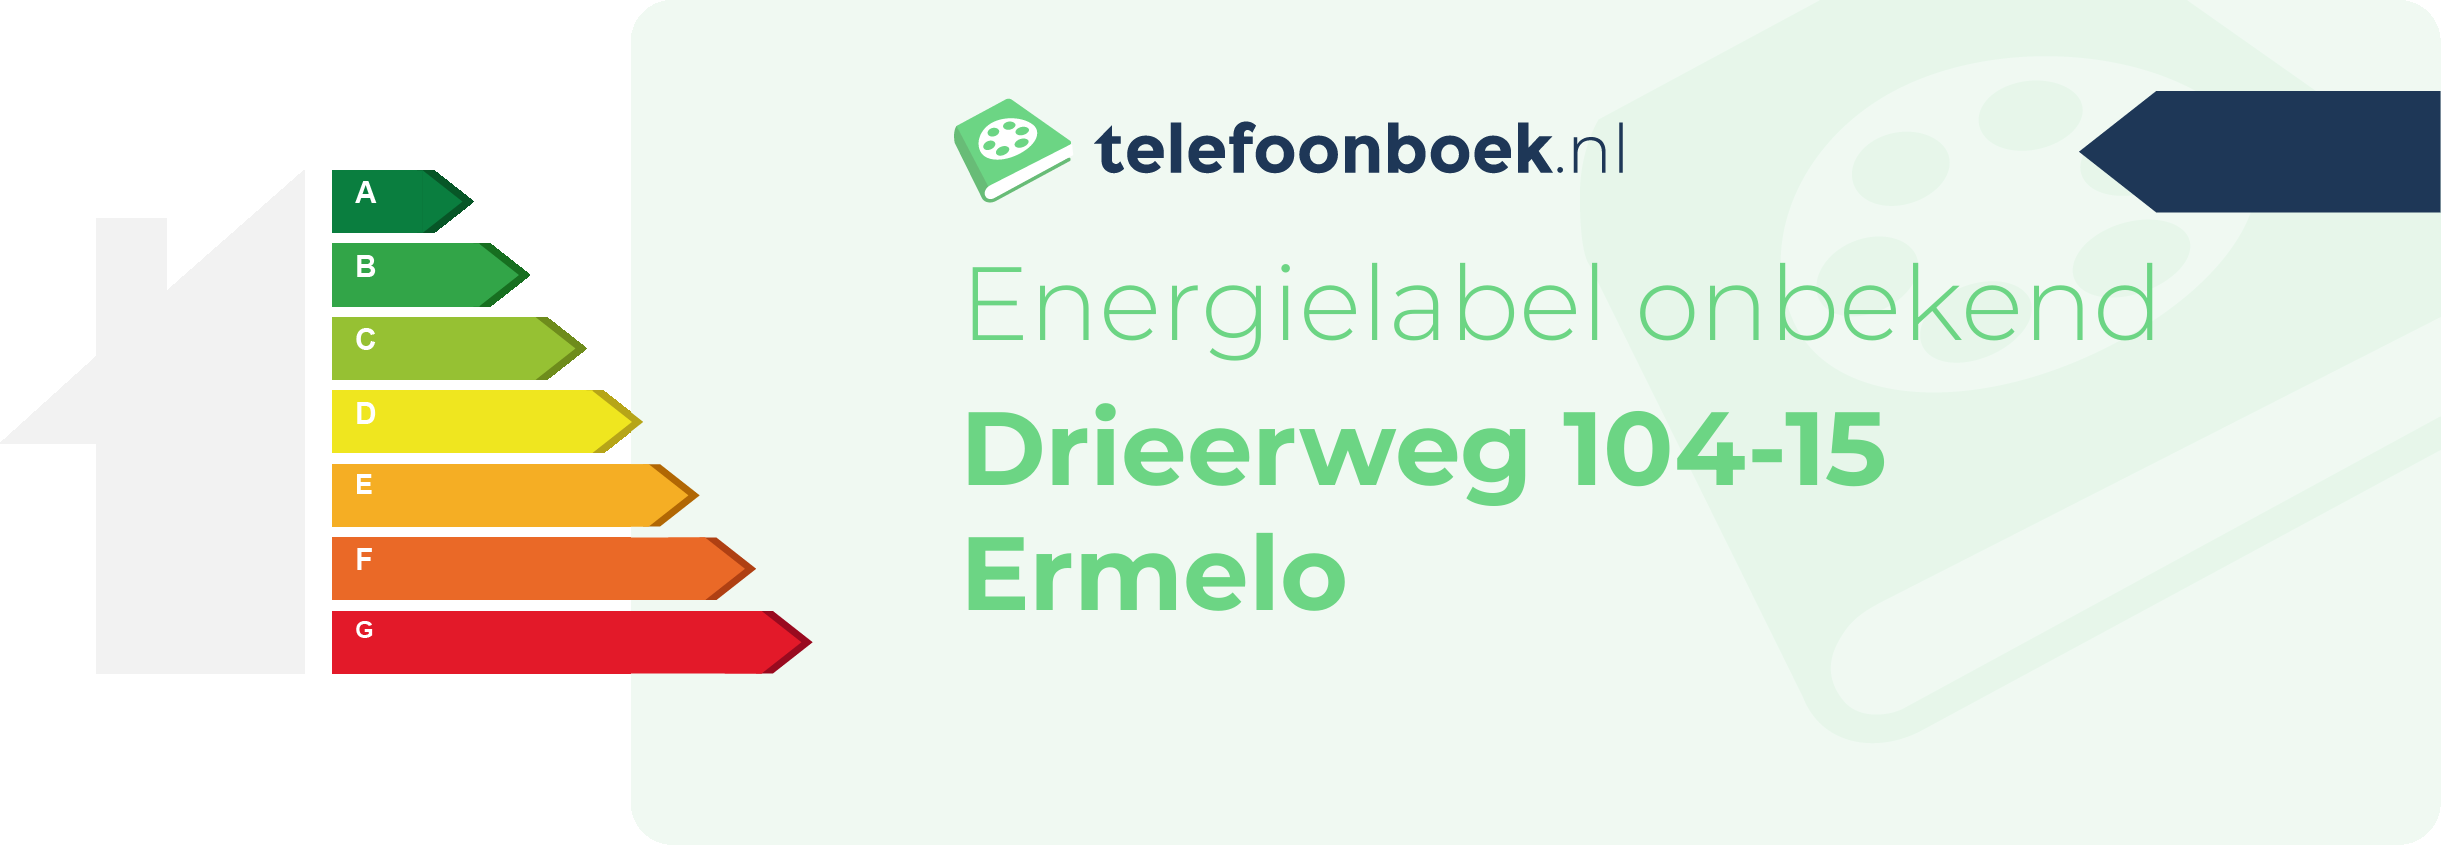 Energielabel Drieerweg 104-15 Ermelo